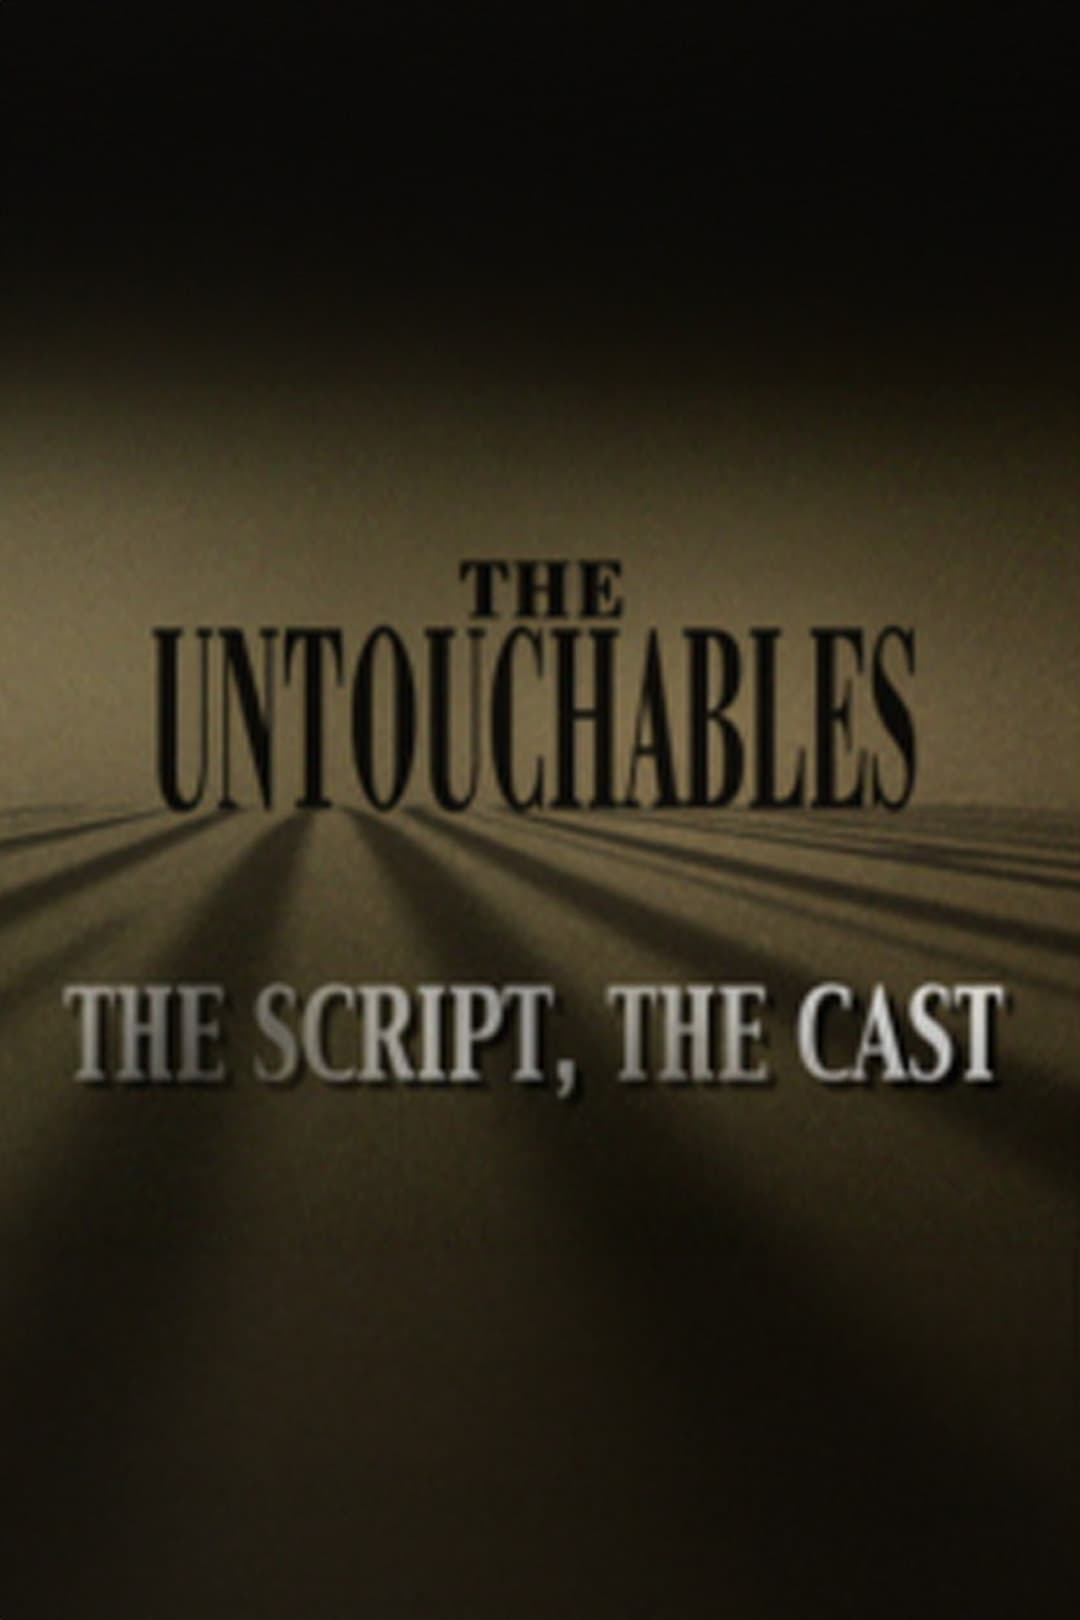 The Untouchables: The Script, the Cast